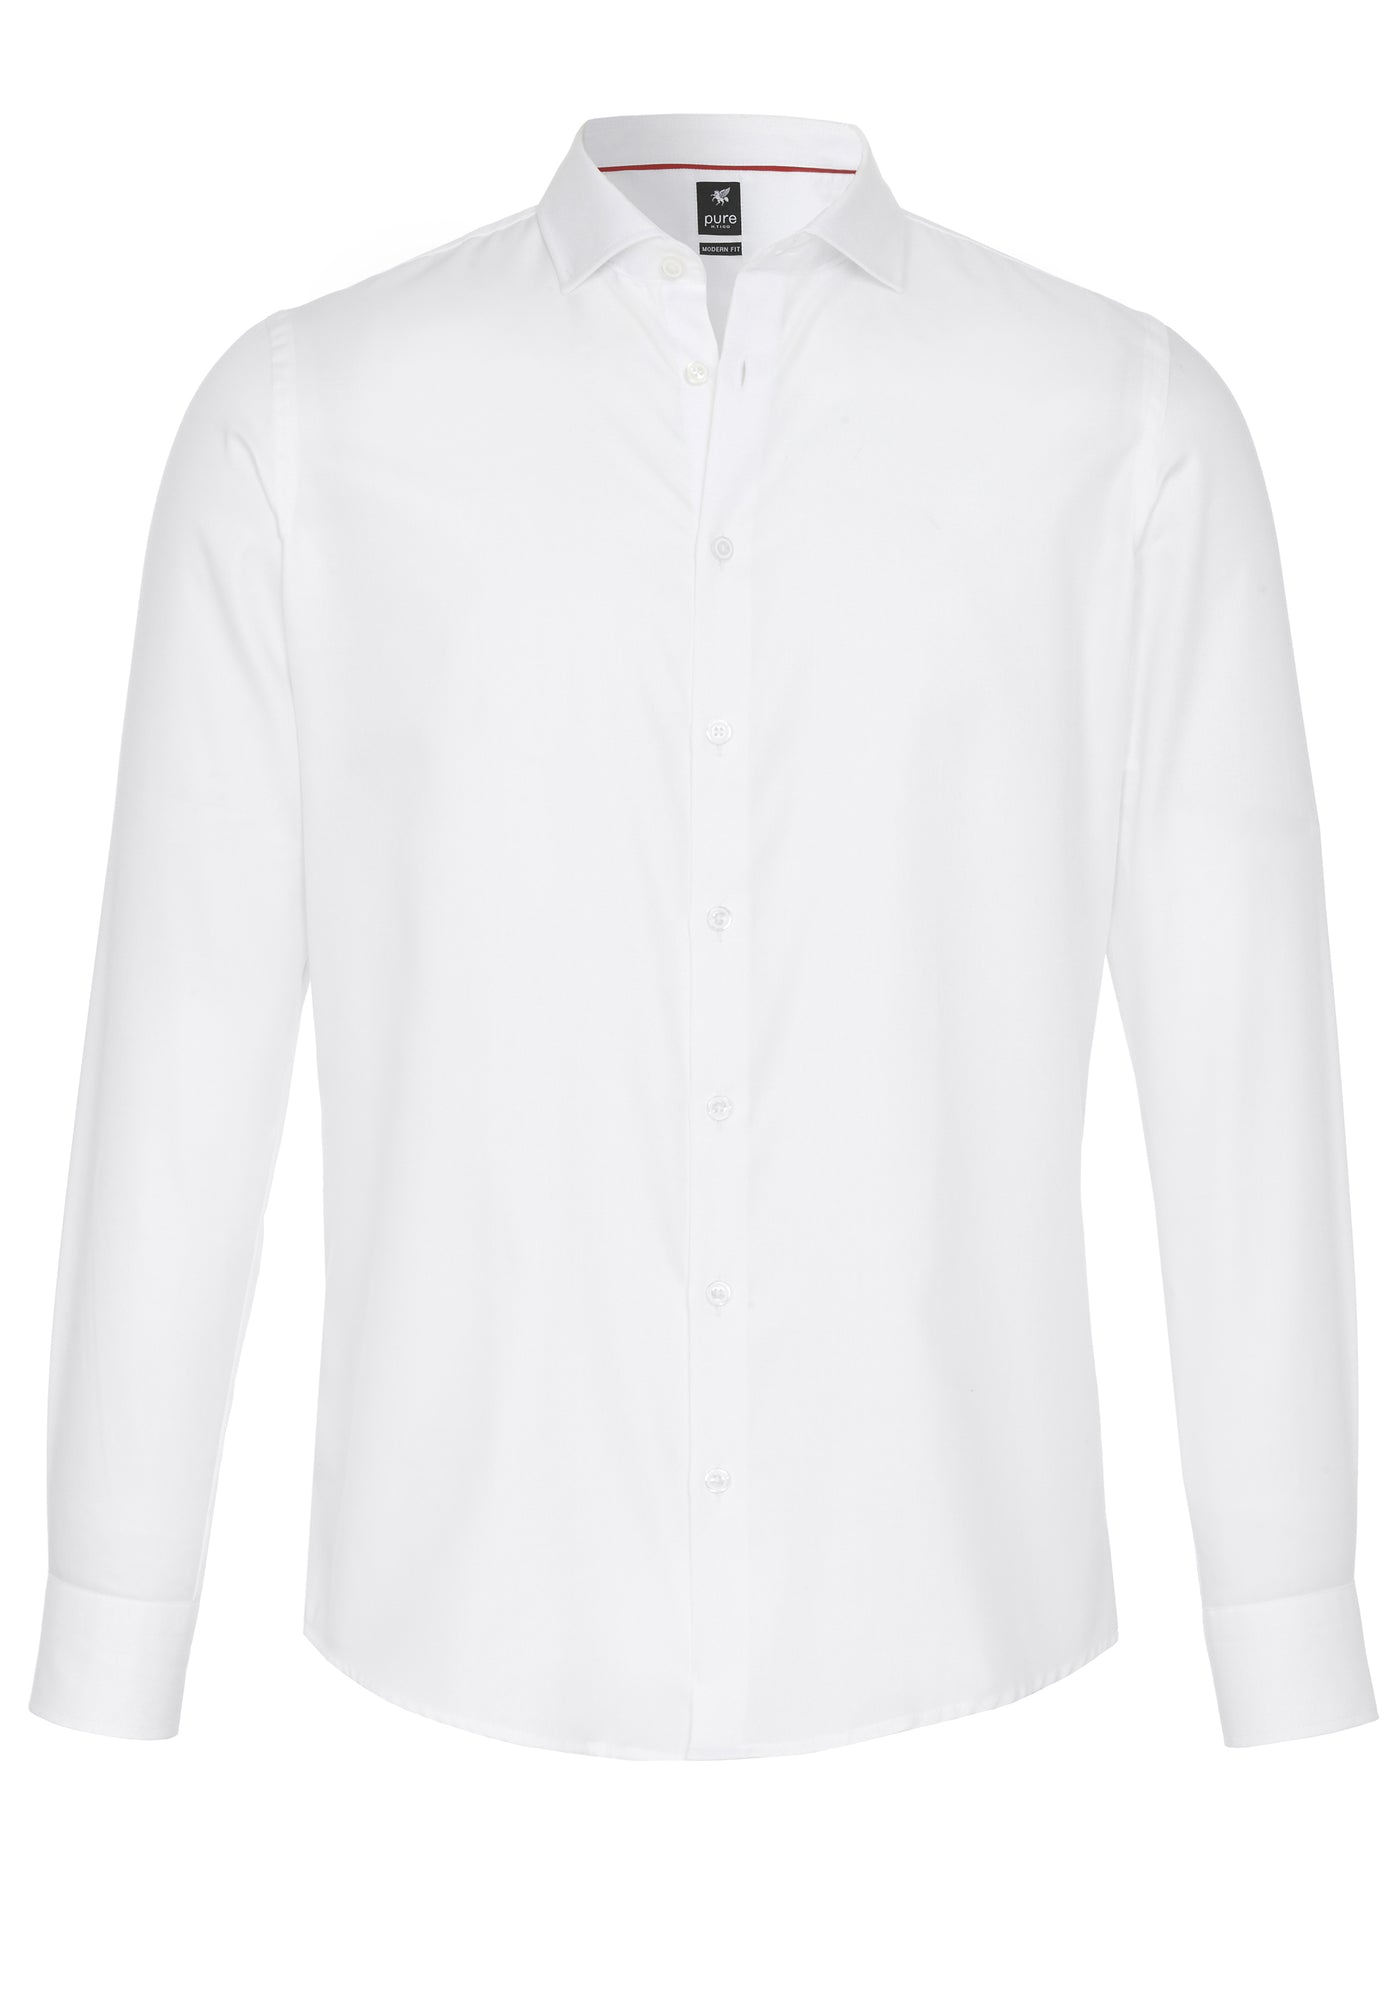 3380-498 - City Hemd Black - weiß - pureshirt